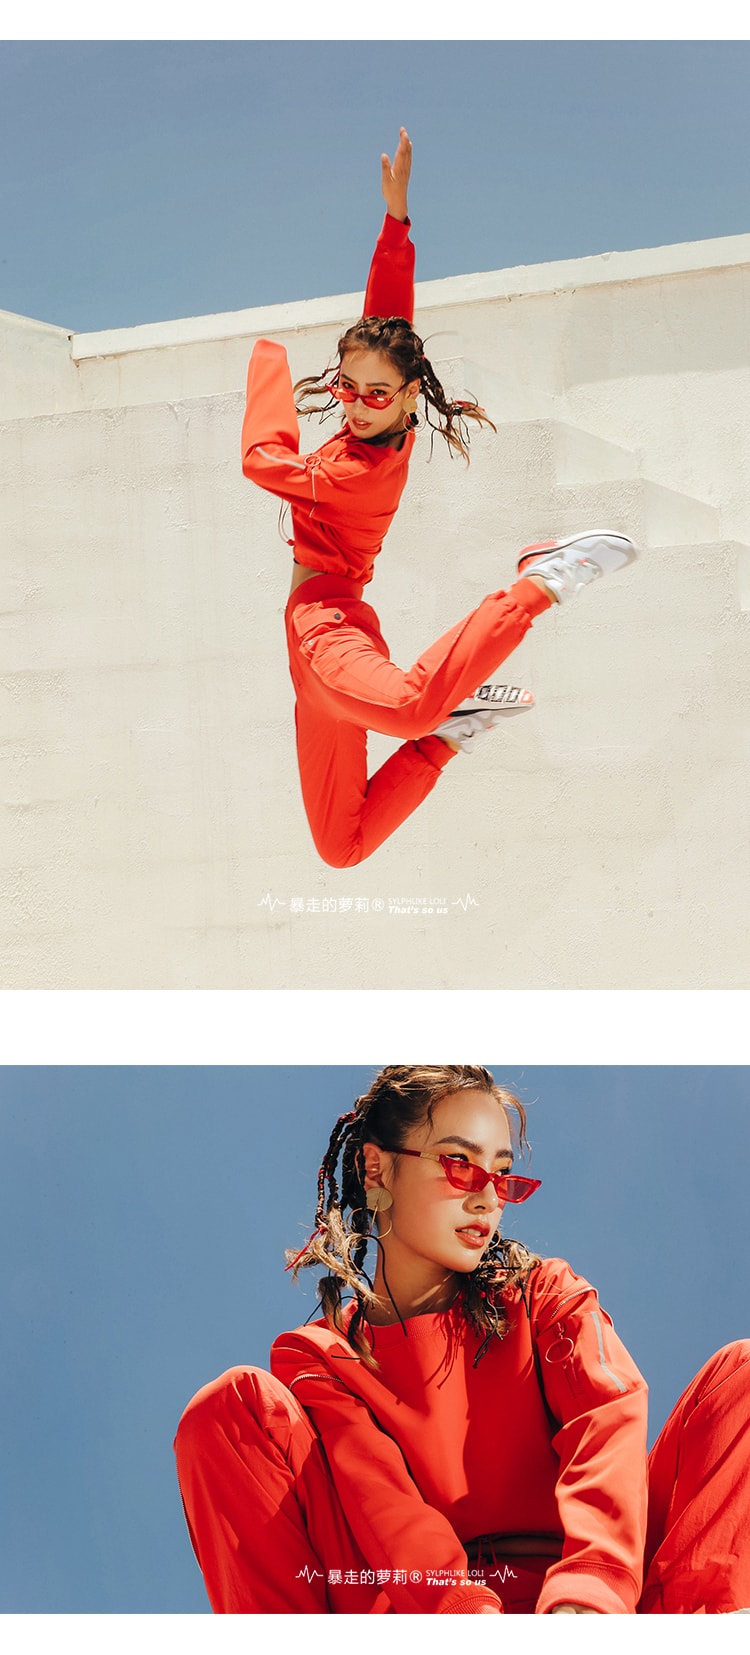 中国直邮 暴走的萝莉 复古休闲长袖运动卫衣 外套健身套头衫/极光红#/XS